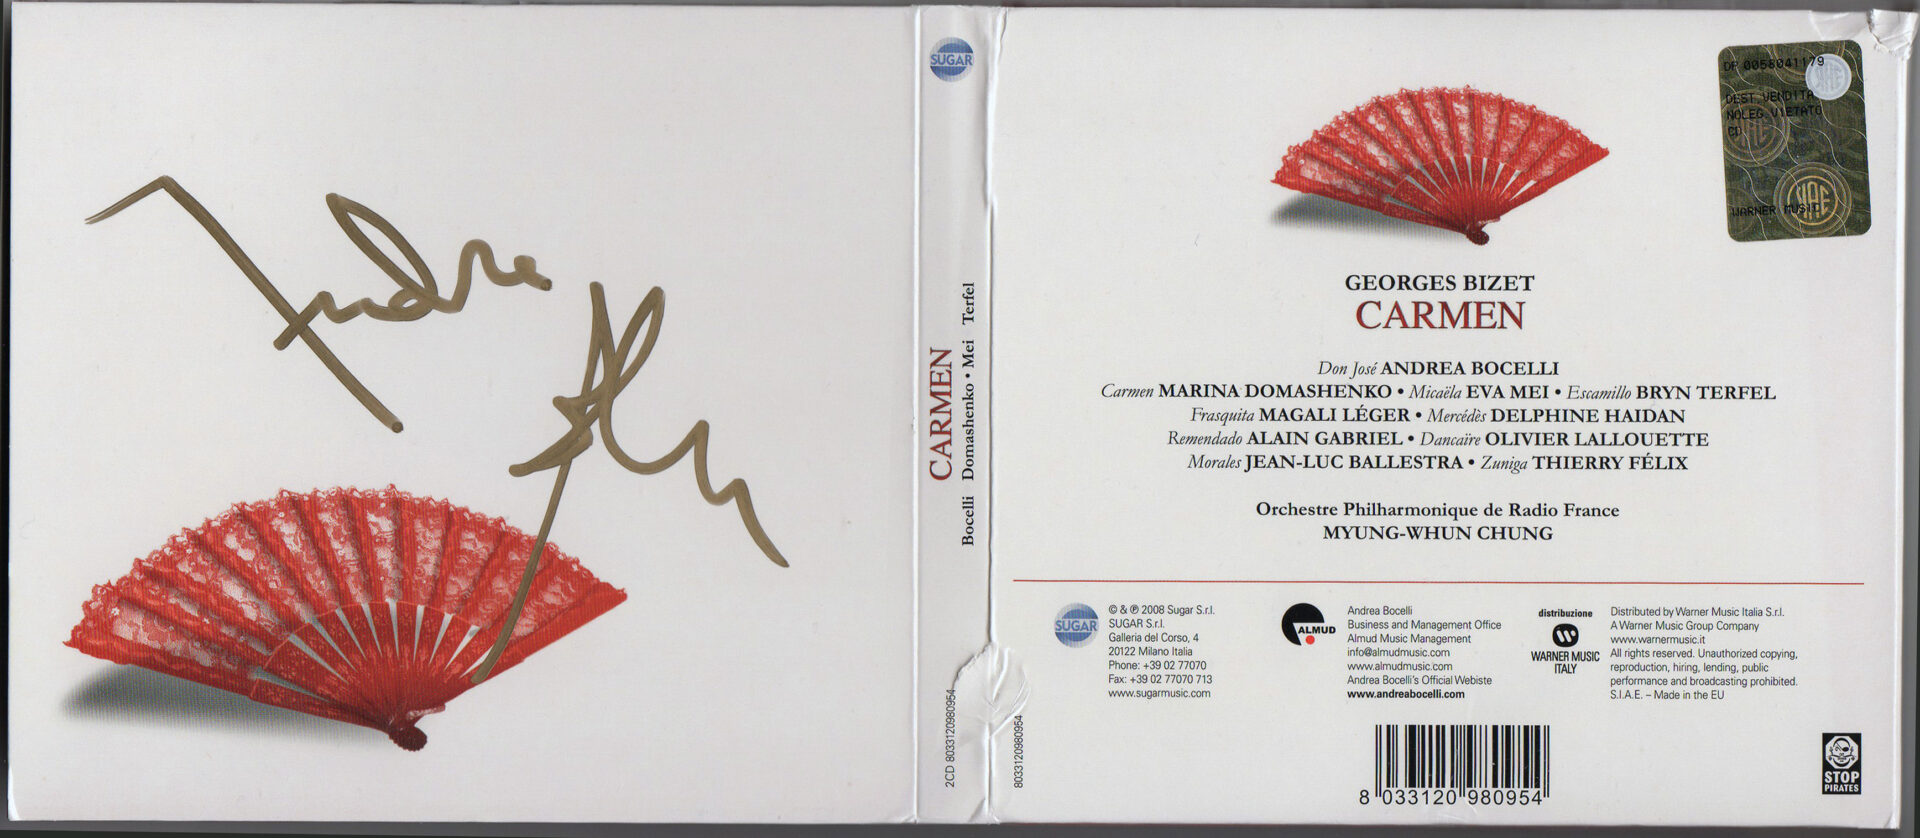 CD Album - Andrea Bocelli - Cinema - Sugar - Italy